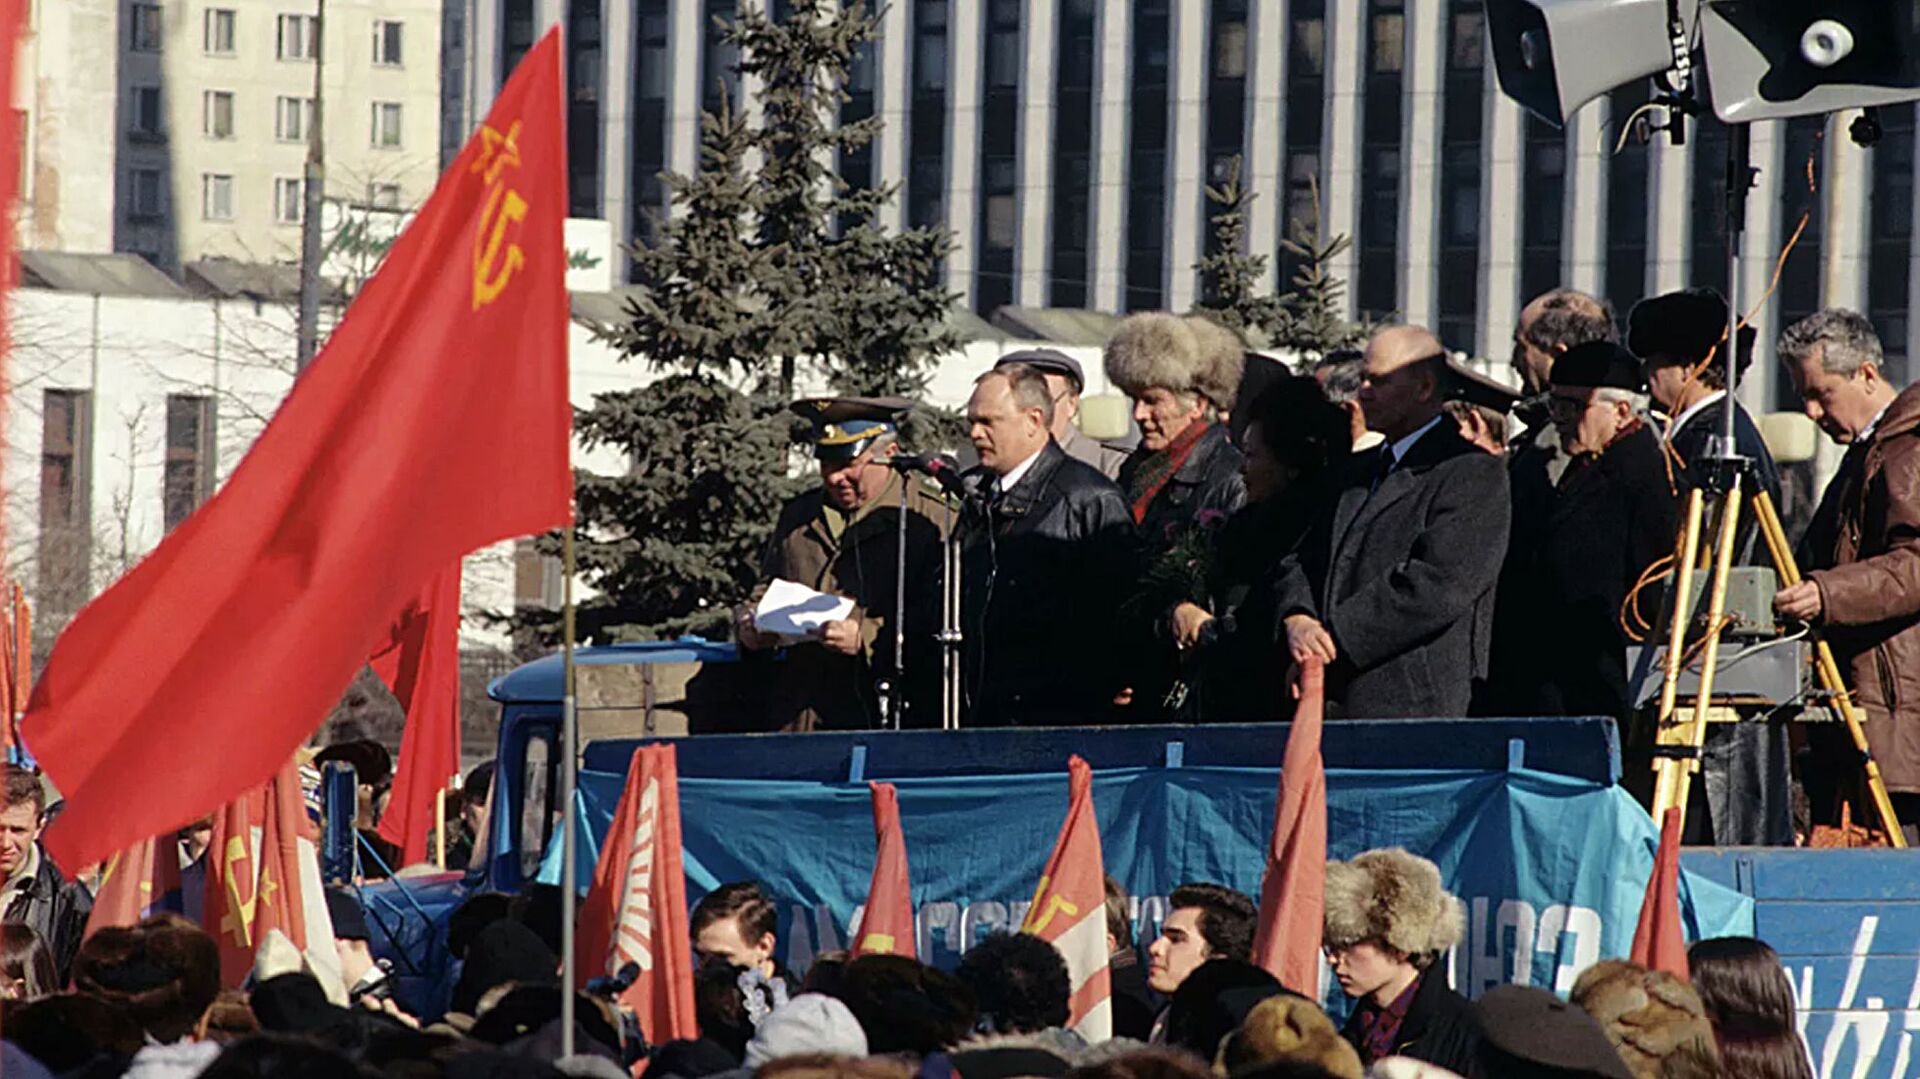 Mitingas Kalužskajos aikštėje Maskvoje, kuris sutapo su 1991 m. kovo 17 d. Visos Sąjungos referendumo dėl TSRS išsaugojimo metinėmis - Sputnik Lietuva, 1920, 08.03.2021